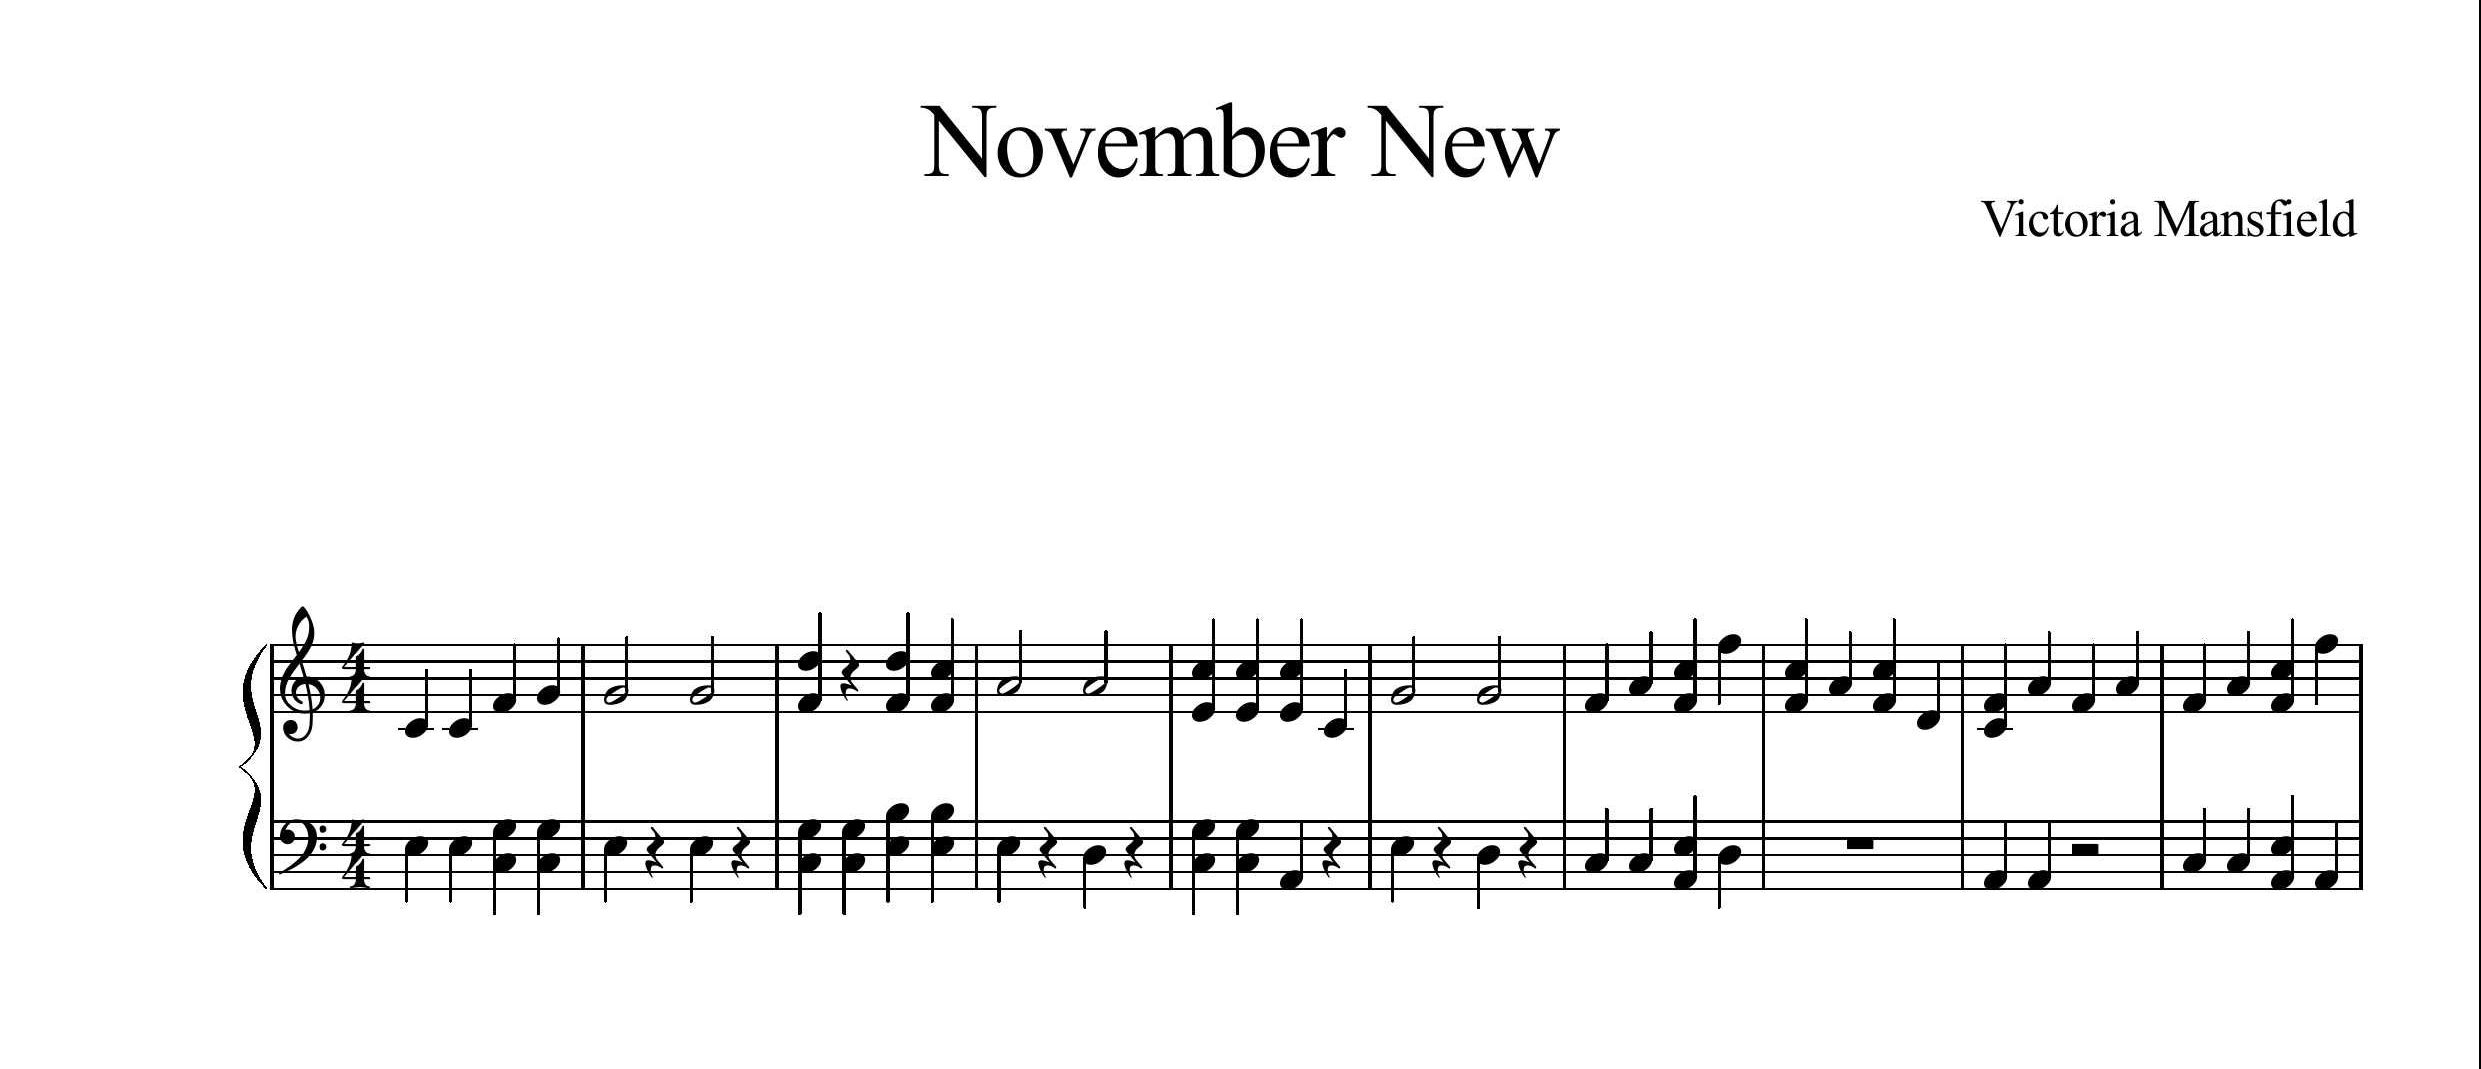 نت پیانوی قطعه November New